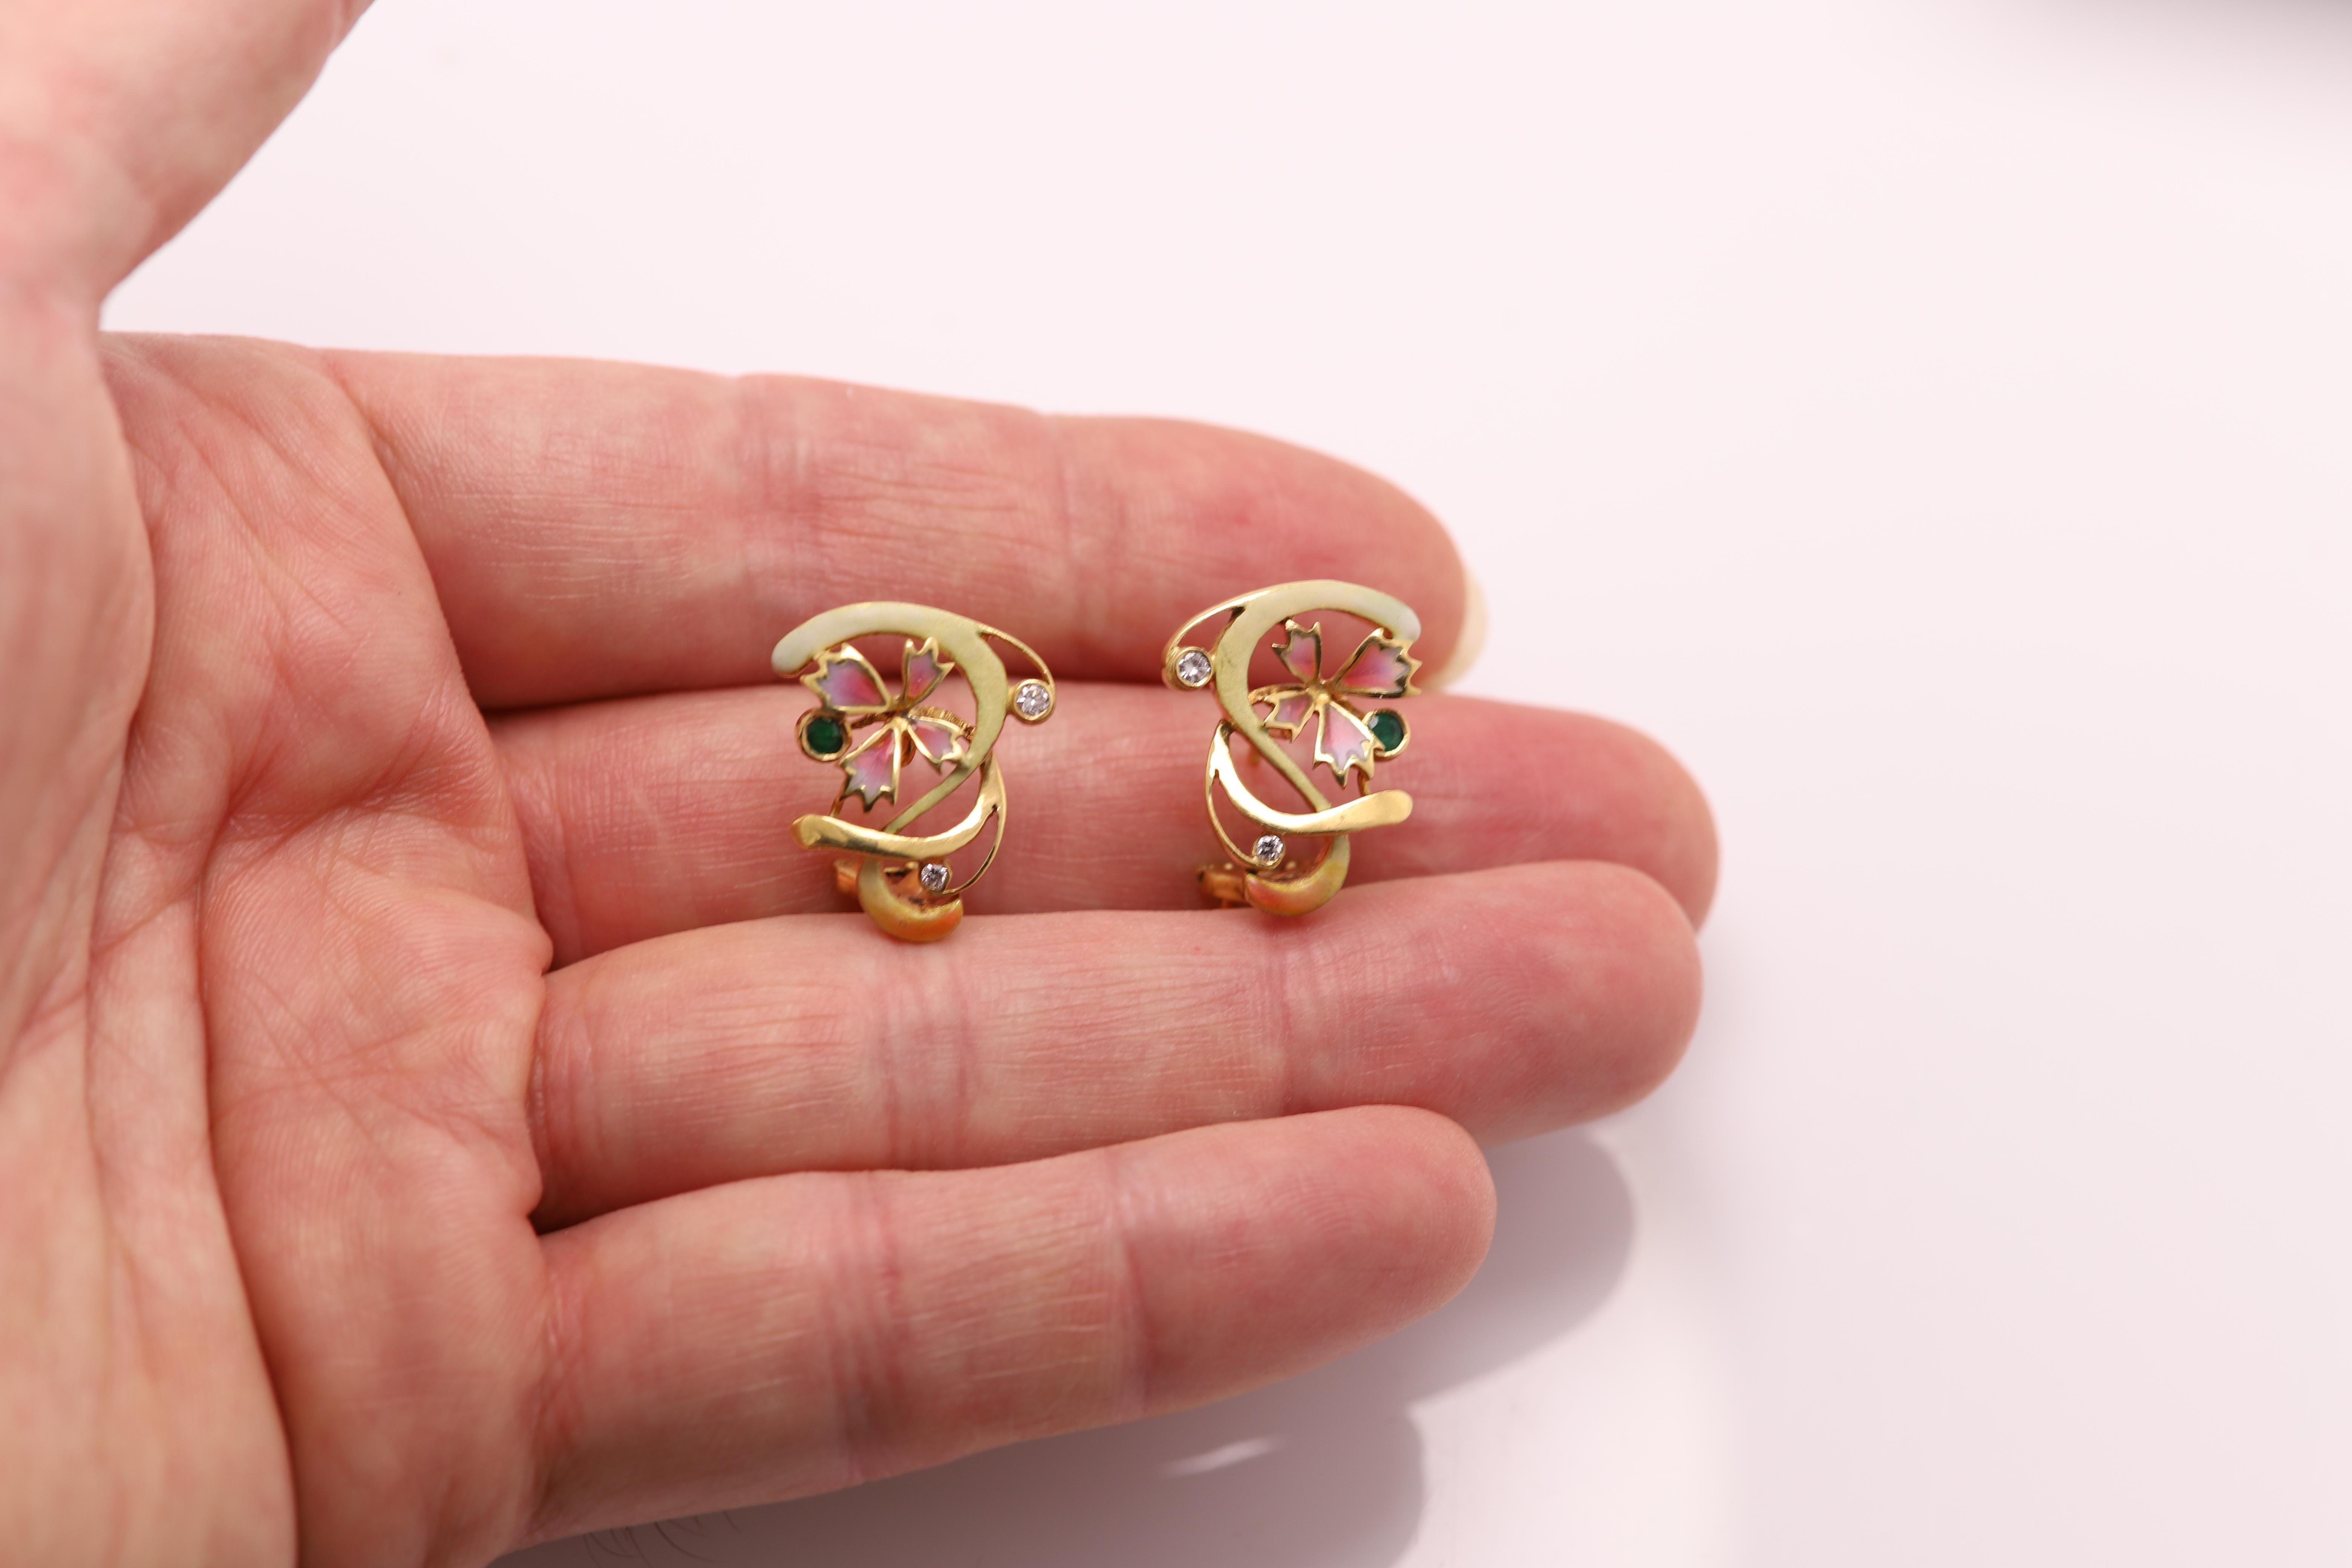 Vintage Hand made in Spain Emaille-Ohrringe
18k Gelbgold 
ungefähre Größe 0,80'  zoll (22 mm)
hat zwei Diamanten und einen Smaragd an jedem Ohr
Gesamtgewicht 11 Gramm.
Der Stil basiert auf der Nouveau-Ära 
dies ist ein neuer Artikel, jedoch habe ich